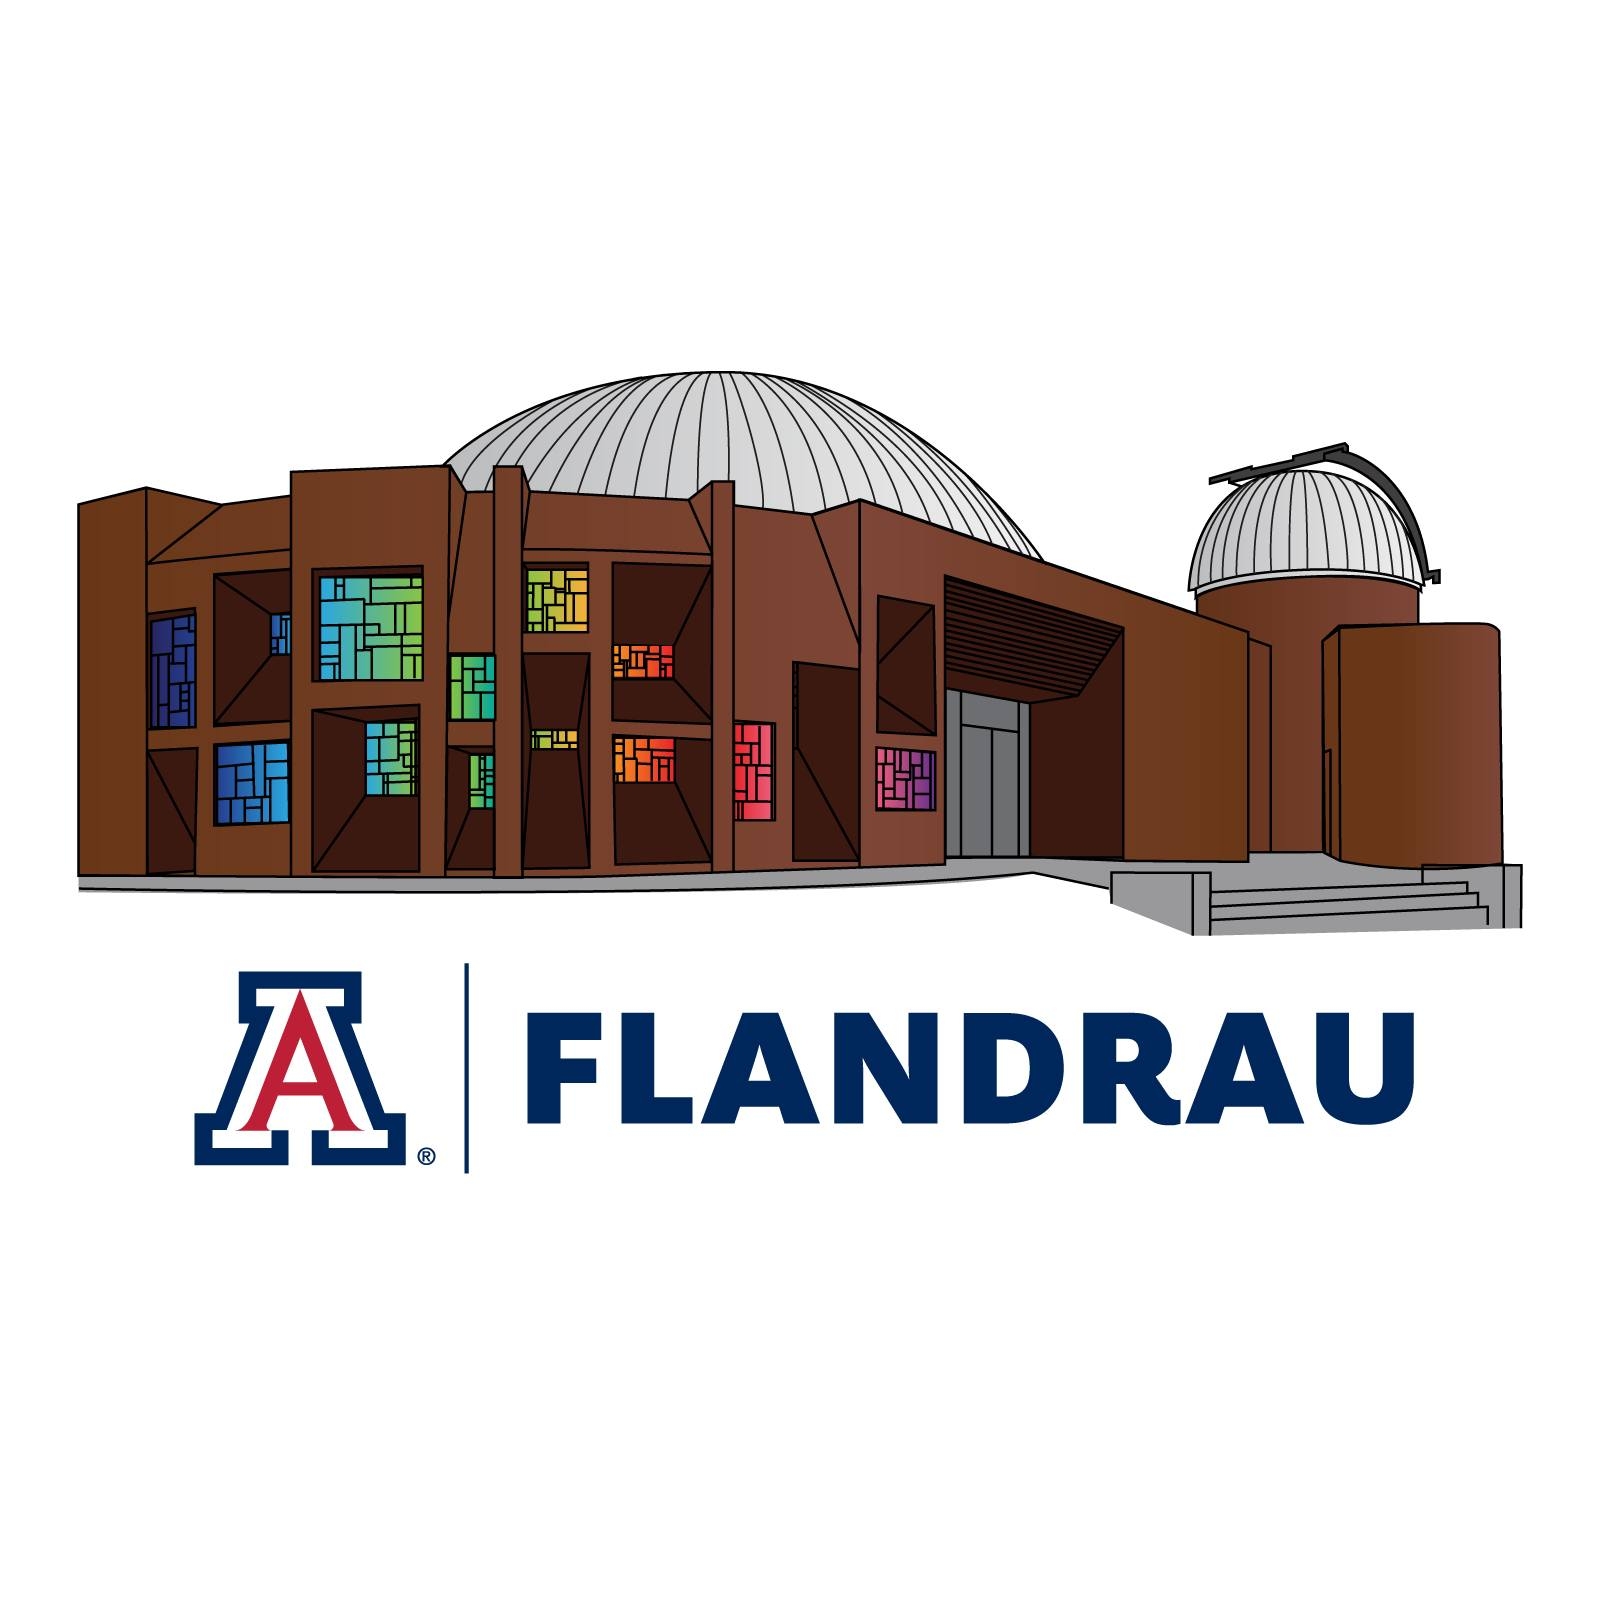 Flandrau Science Center and Planetarium|Museums|Travel